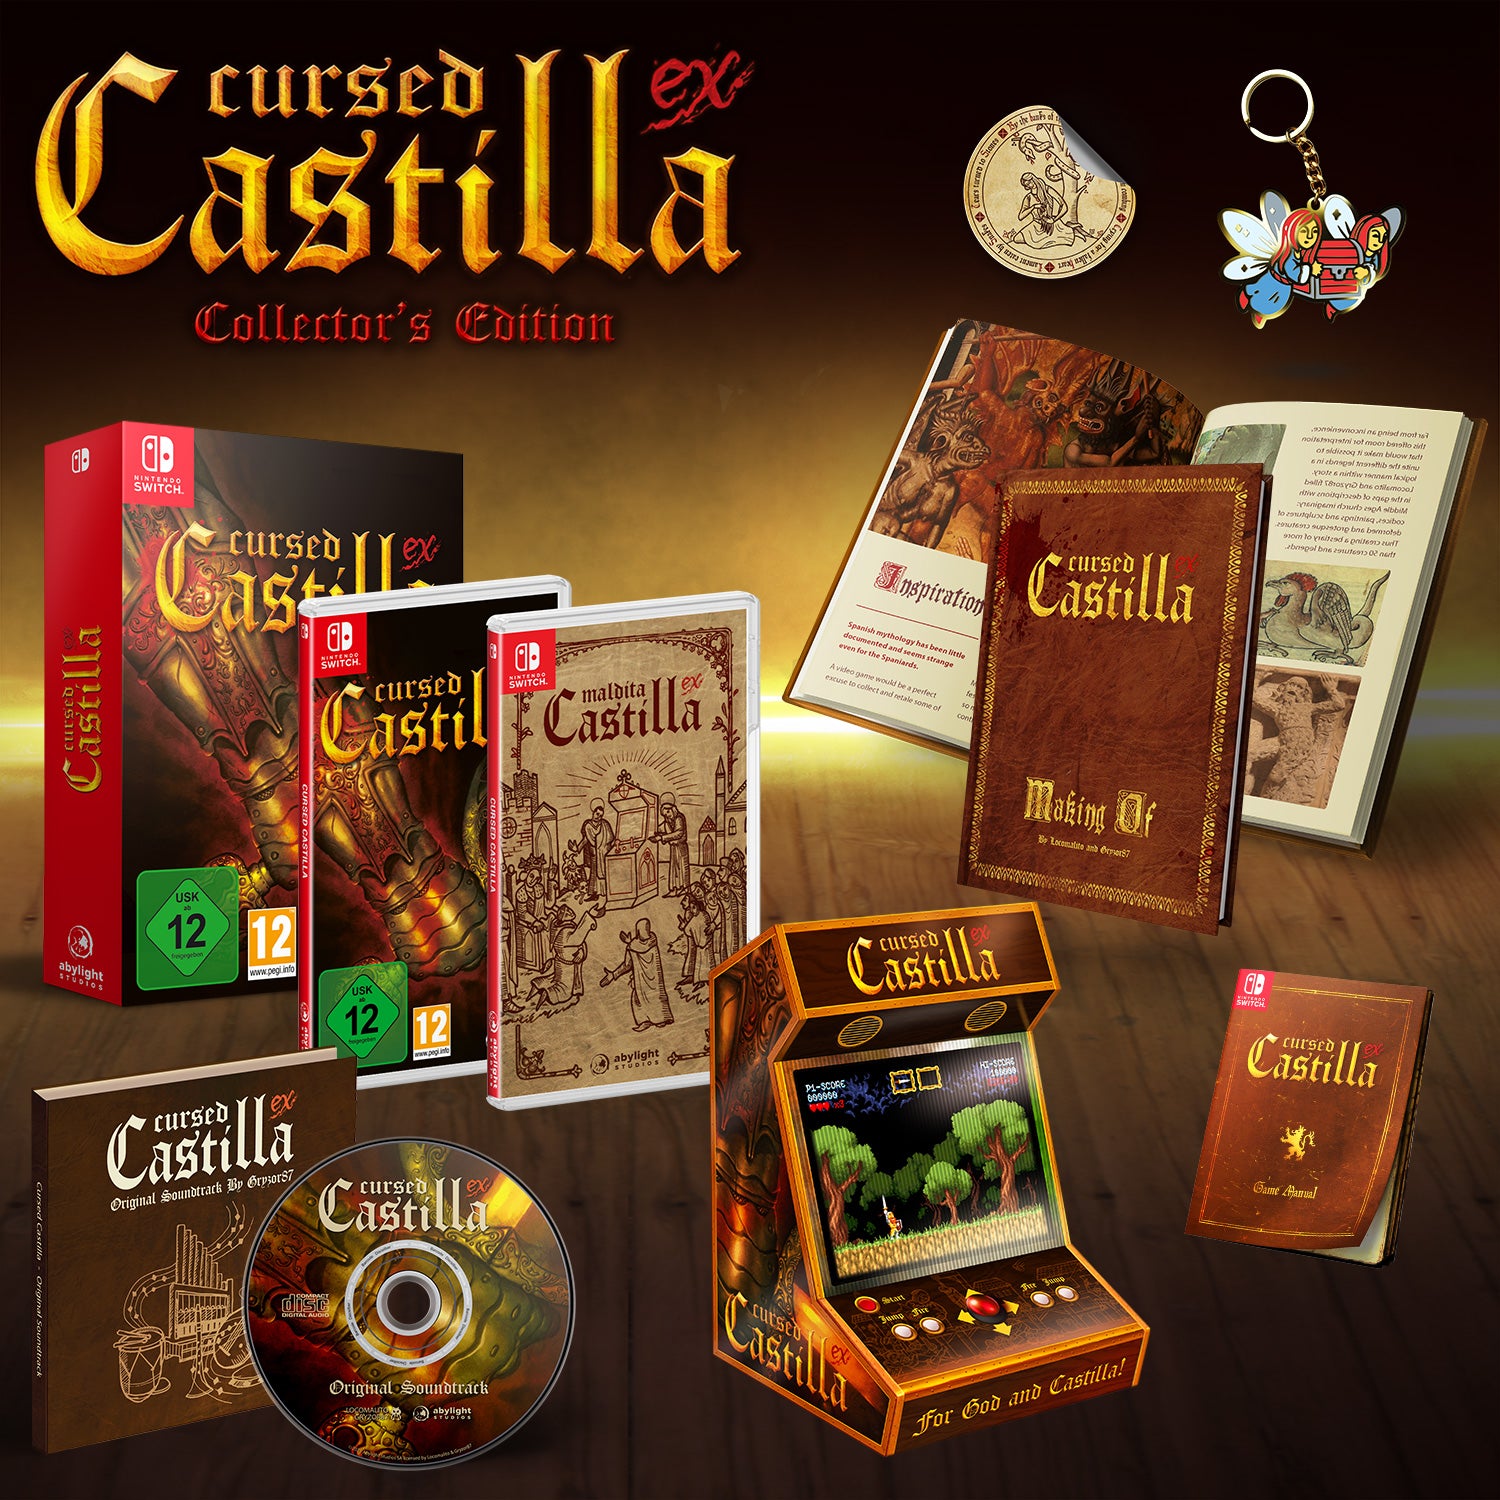 Cursed Castilla Collector S Edition Nintendo Switch